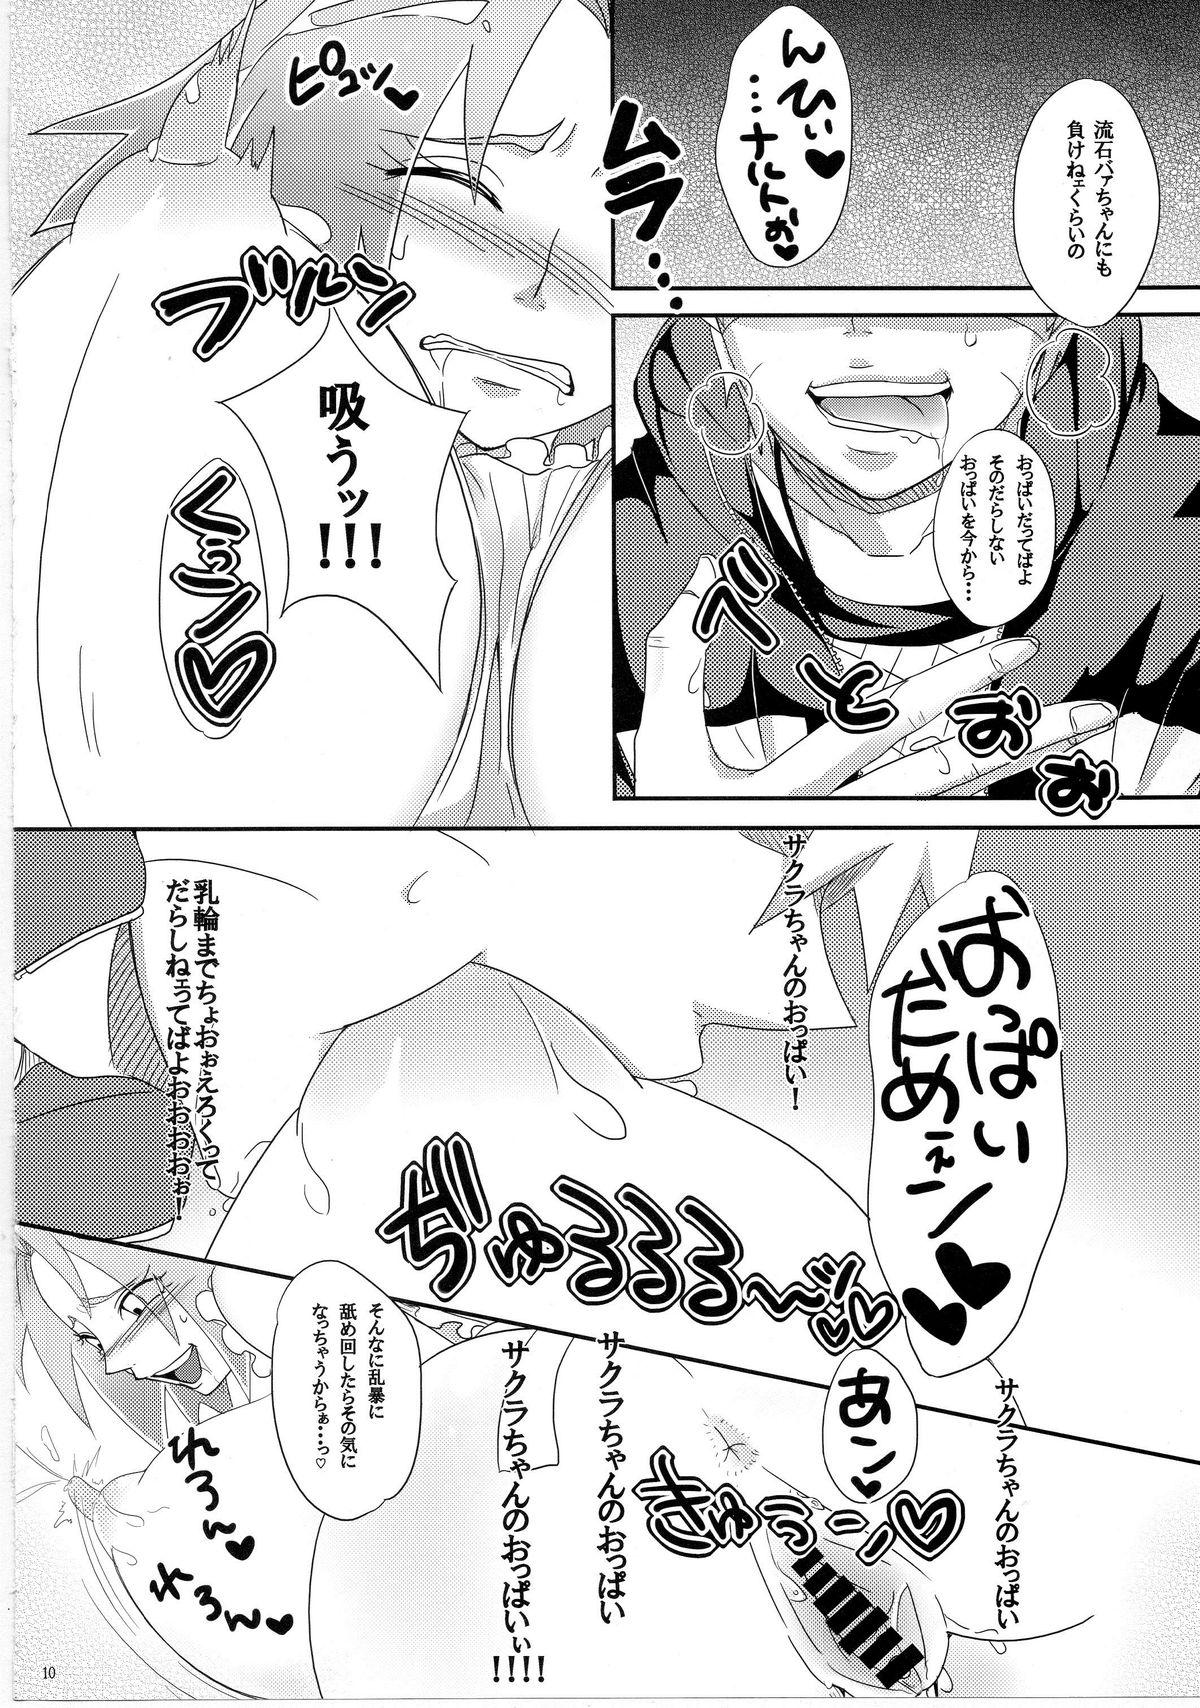 Cocksucking Sato Ichiban no! - Naruto Fishnets - Page 9